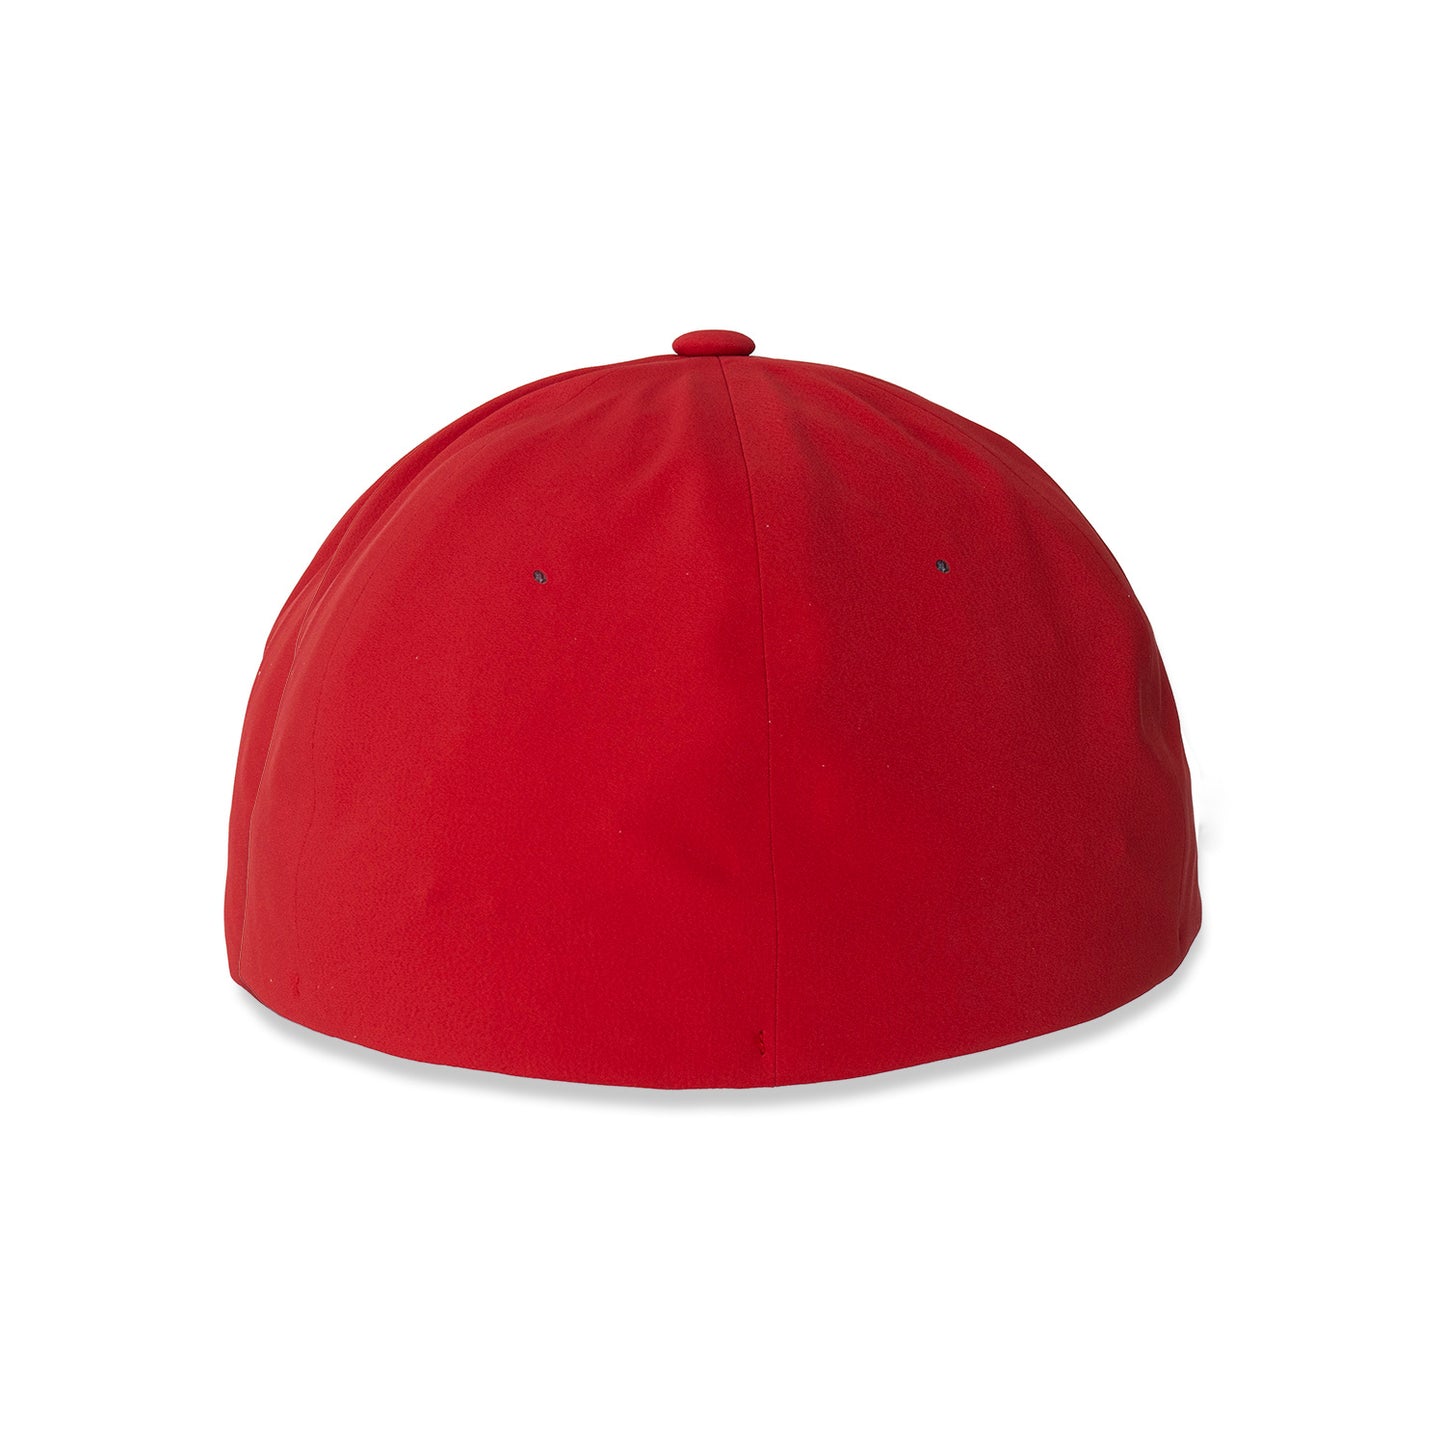 IMSA Flexfit Hat - Red